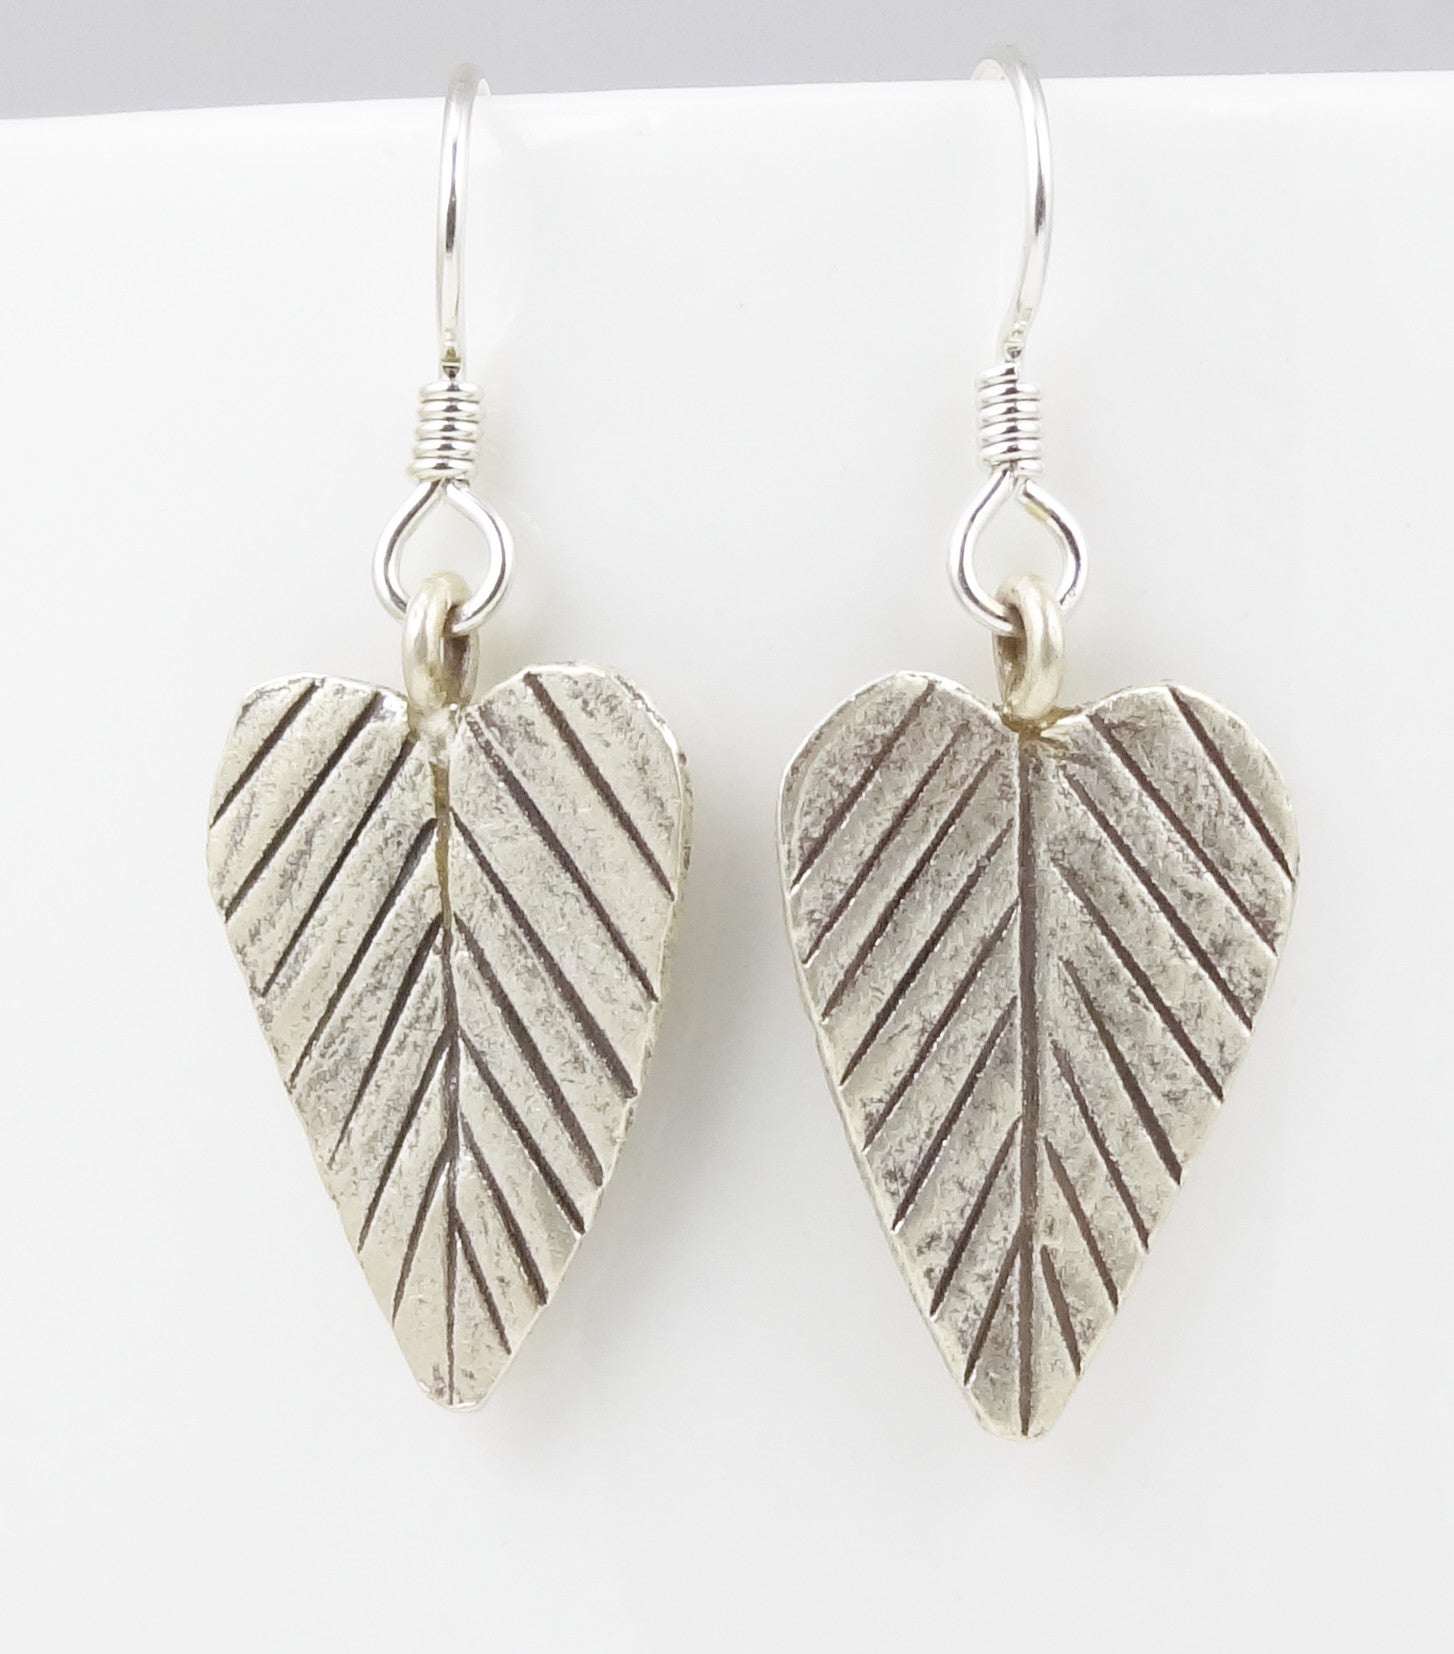 Hill Tribe Silver Long Heart-Shaped Leaf Earrings